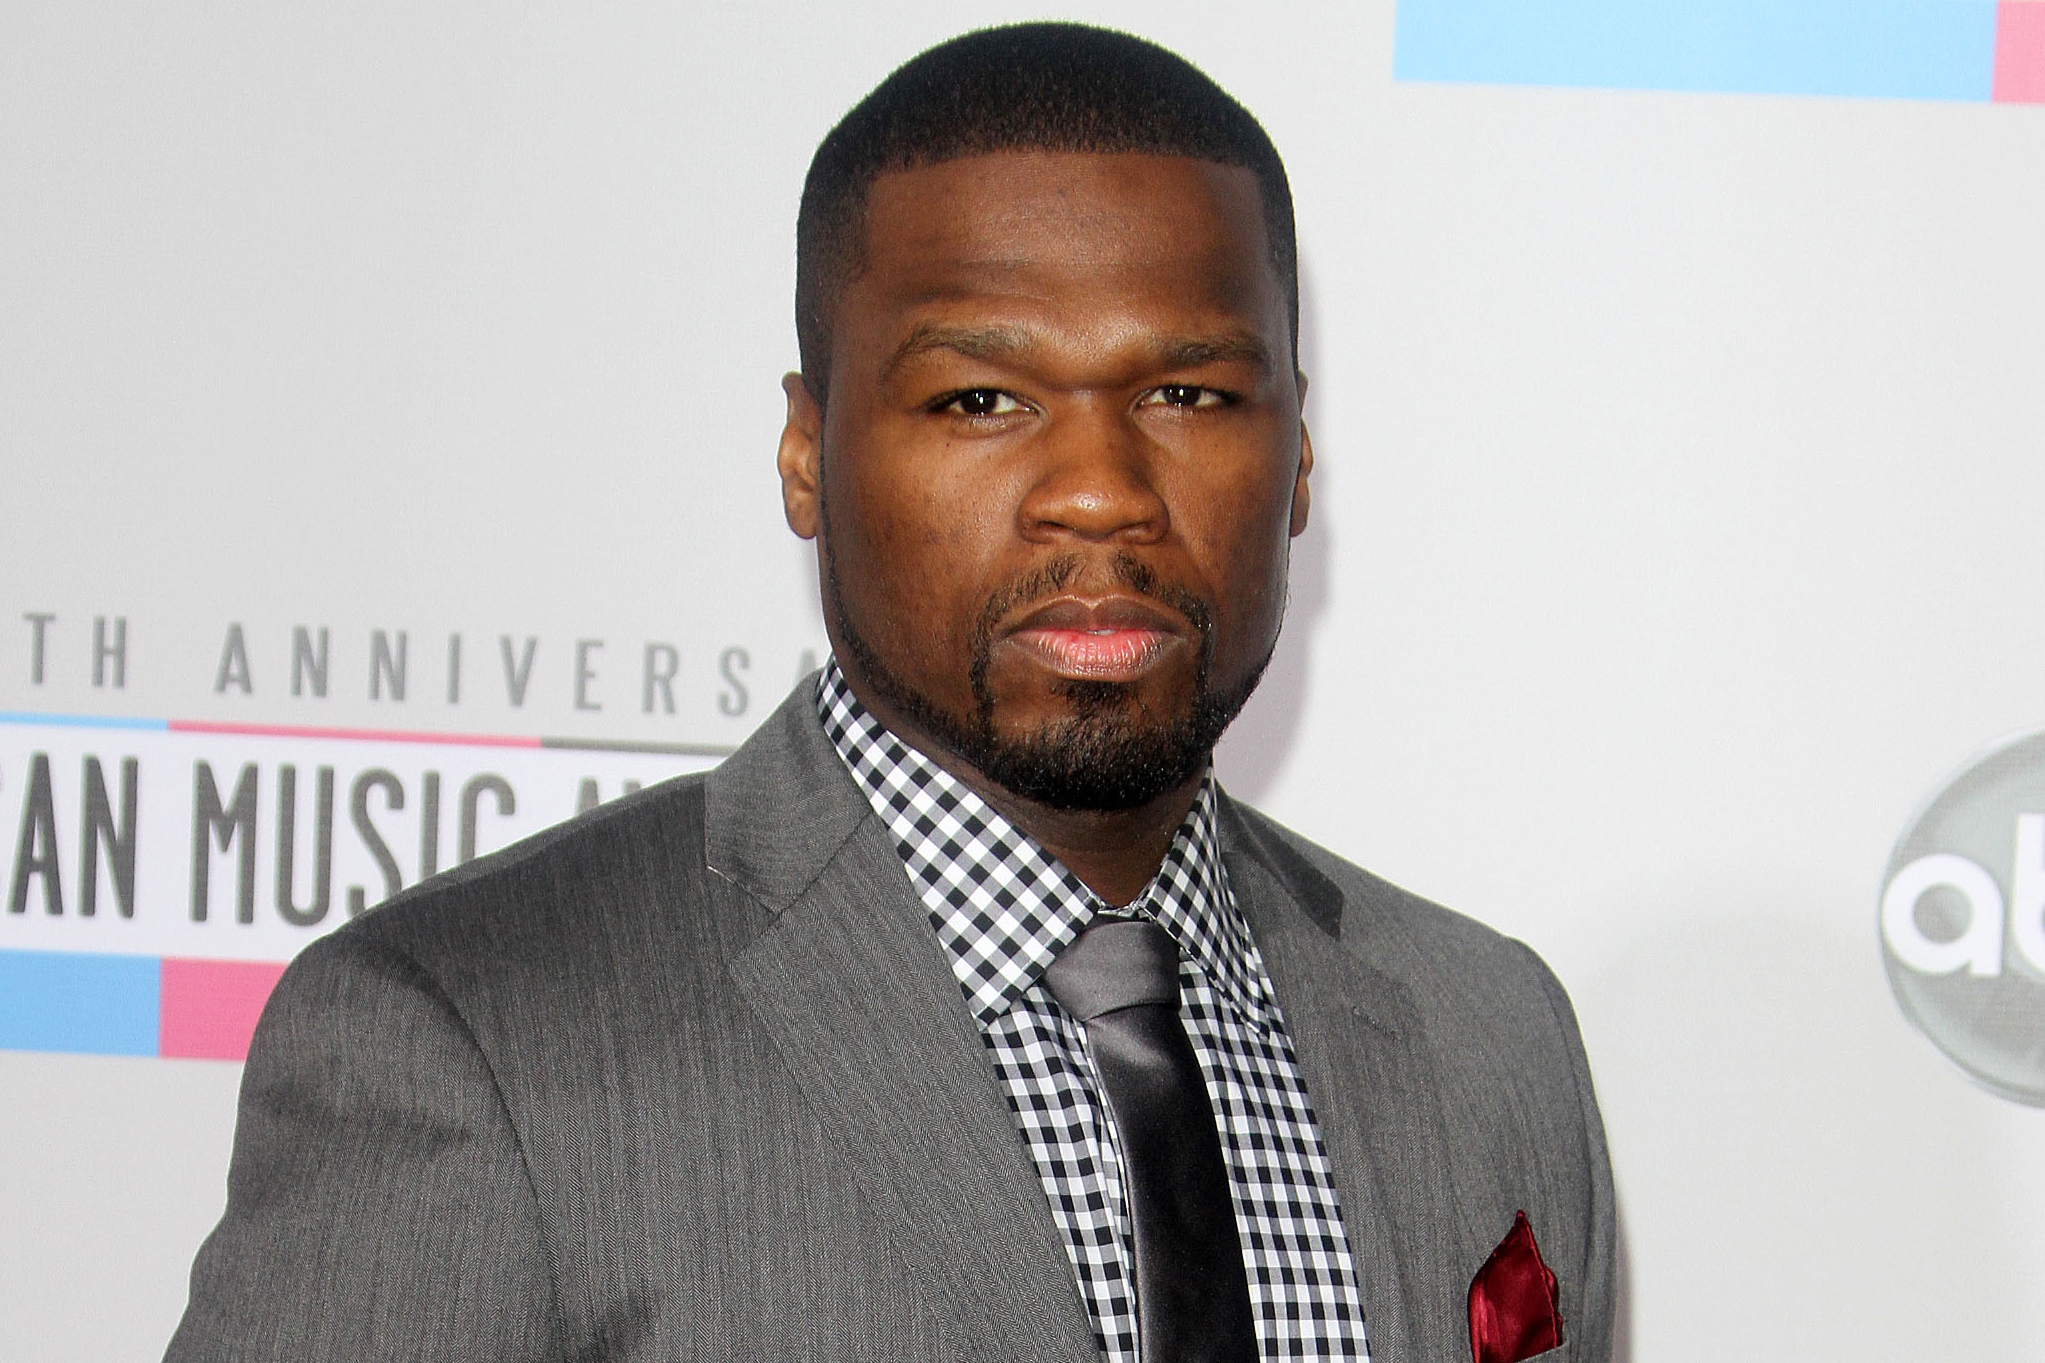 50 Cent arrested for indecent language